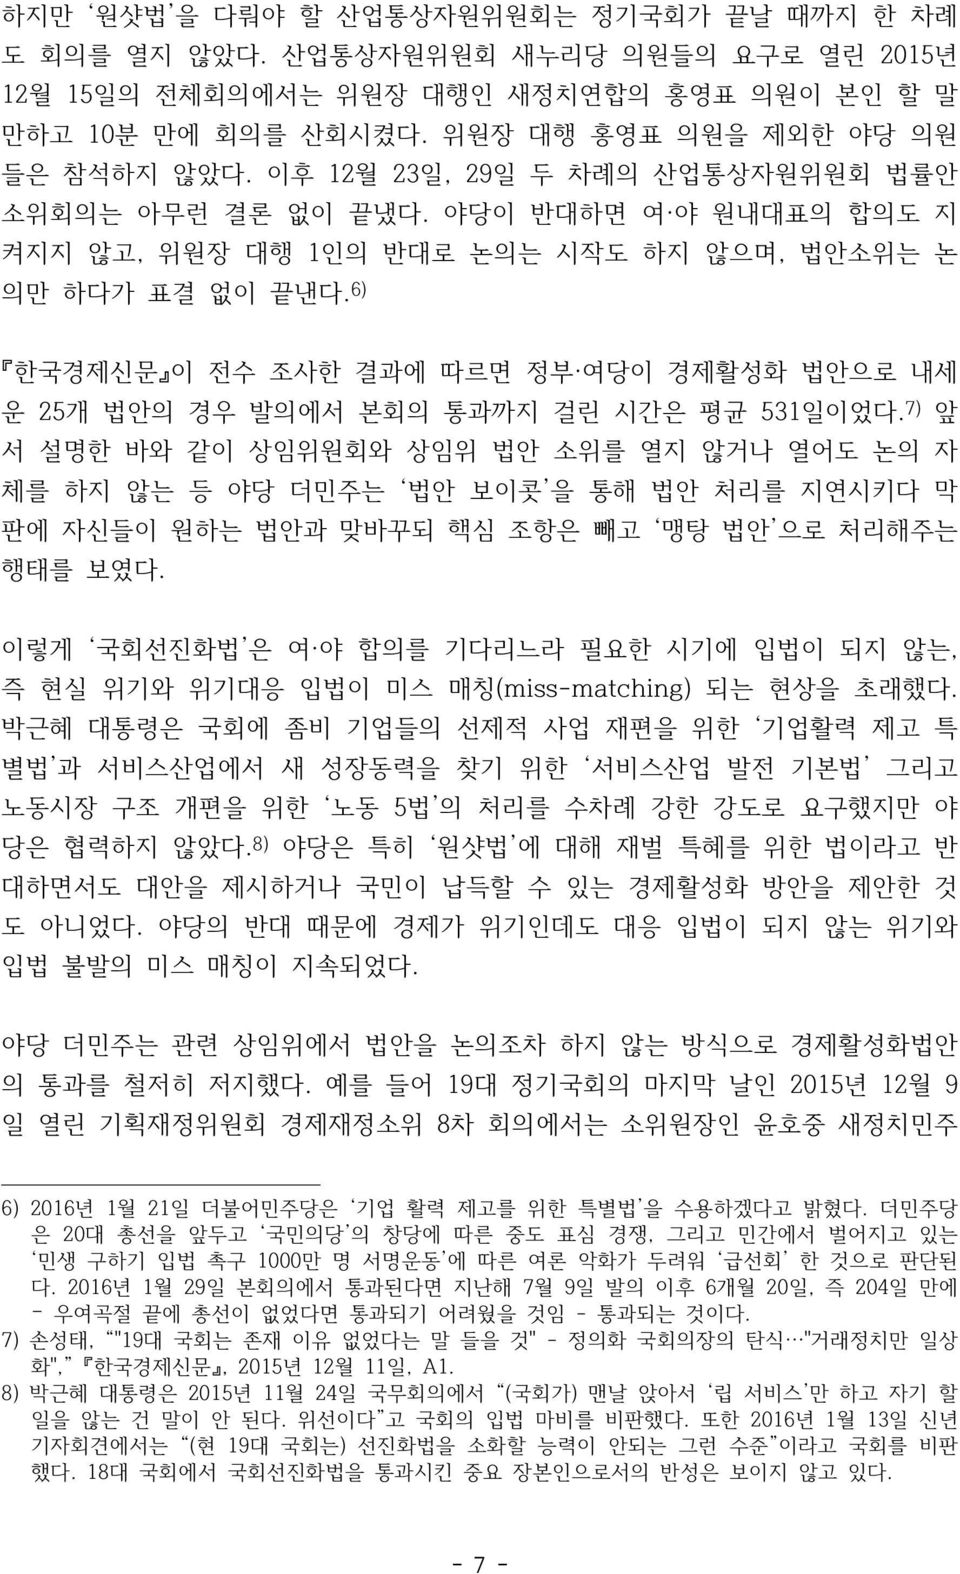 6) 한국경제신문 이 전수 조사한 결과에 따르면 정부 여당이 경제활성화 법안으로 내세 운 25개 법안의 경우 발의에서 본회의 통과까지 걸린 시간은 평균 531일이었다.